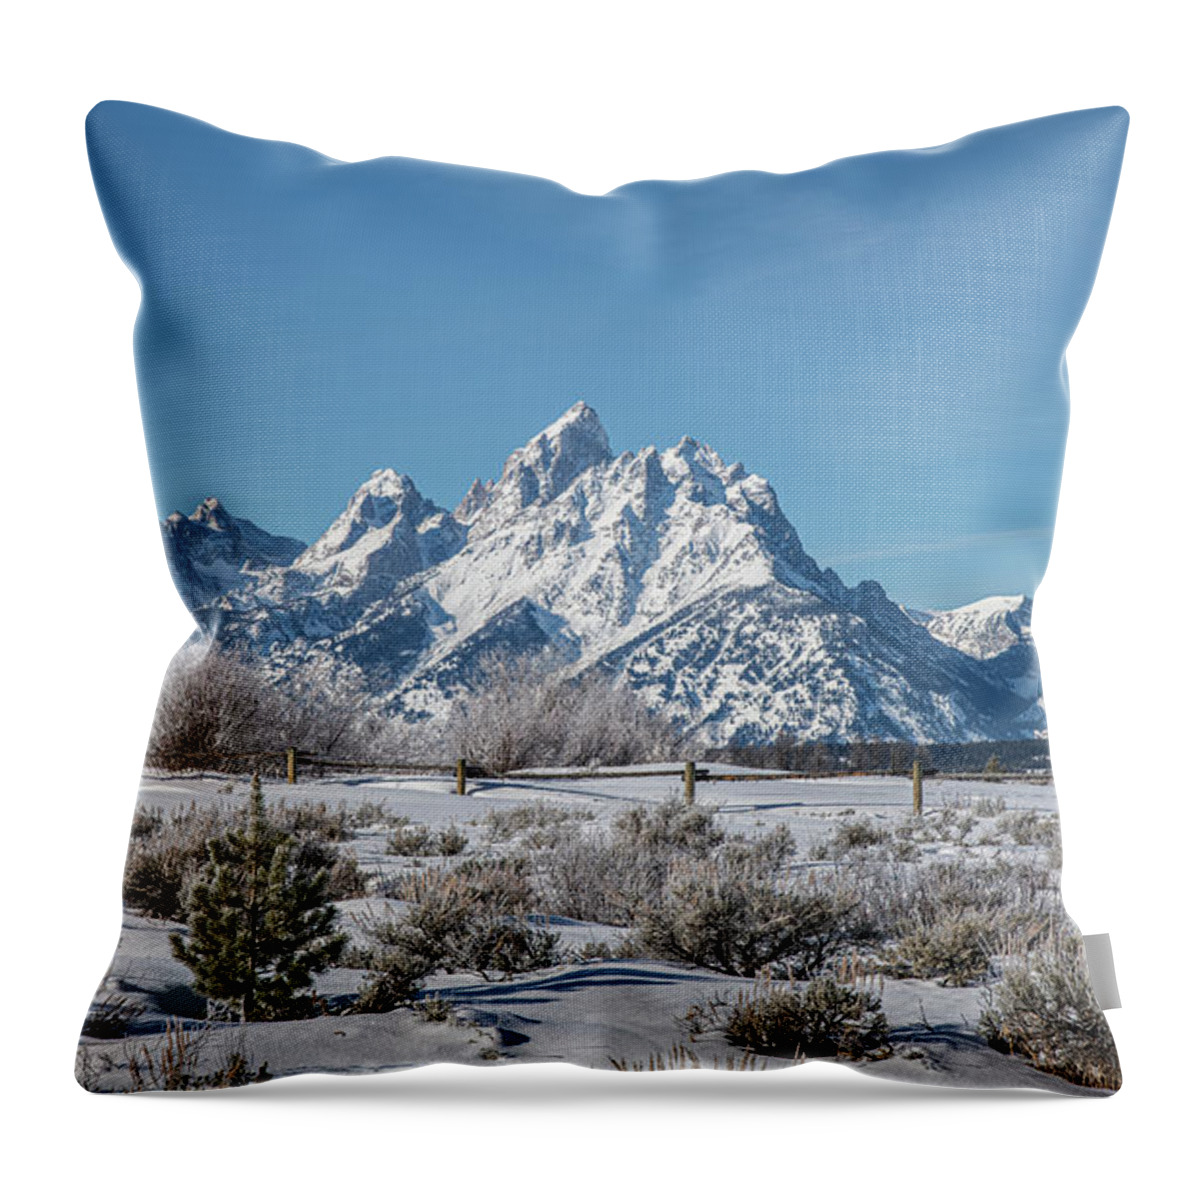 Elk Ranch Road Throw Pillow featuring the photograph Elk Ranch Flats Winter Tetons by Douglas Wielfaert